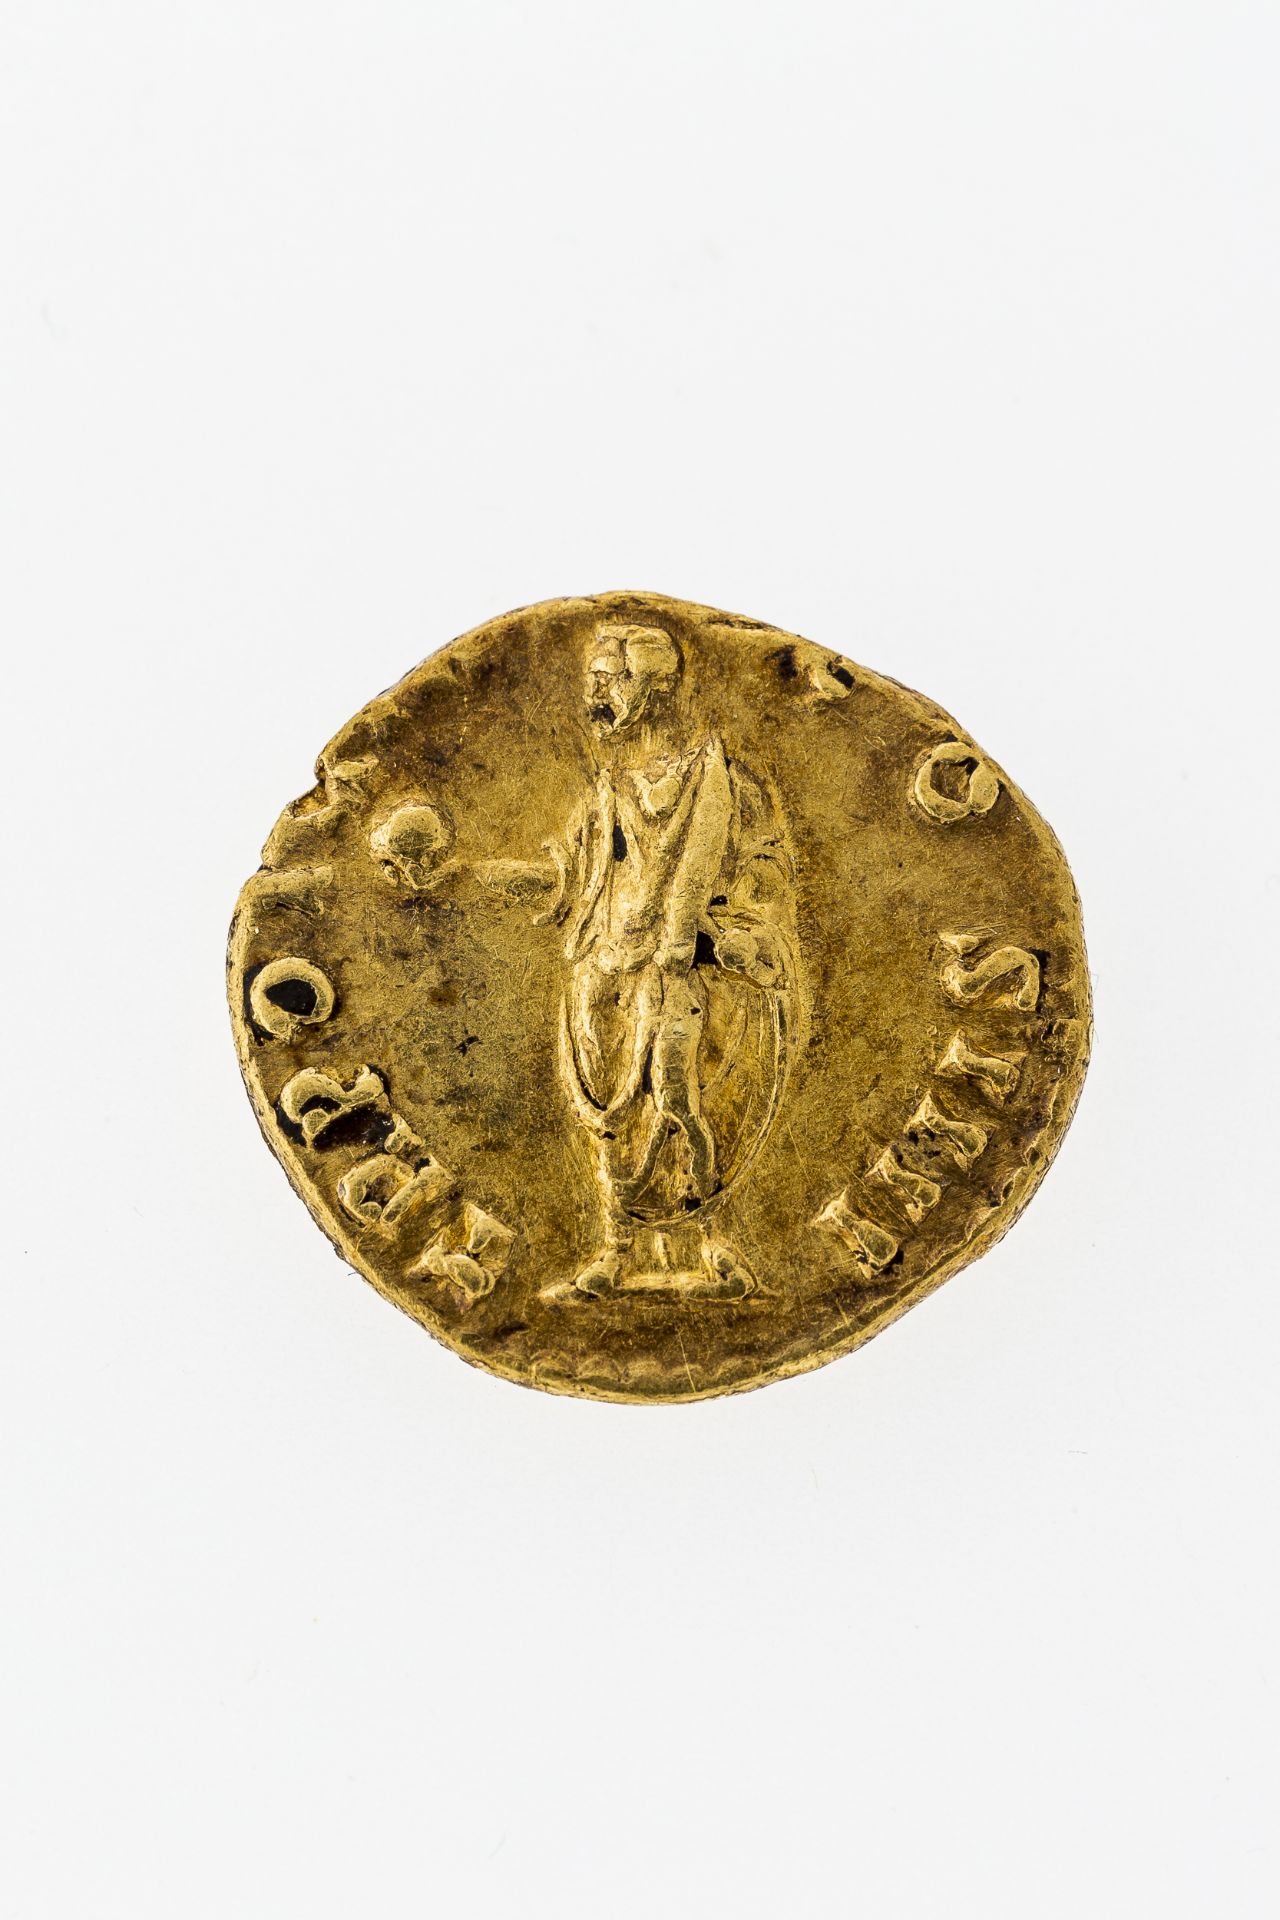 Antoninus Pius - Image 2 of 2